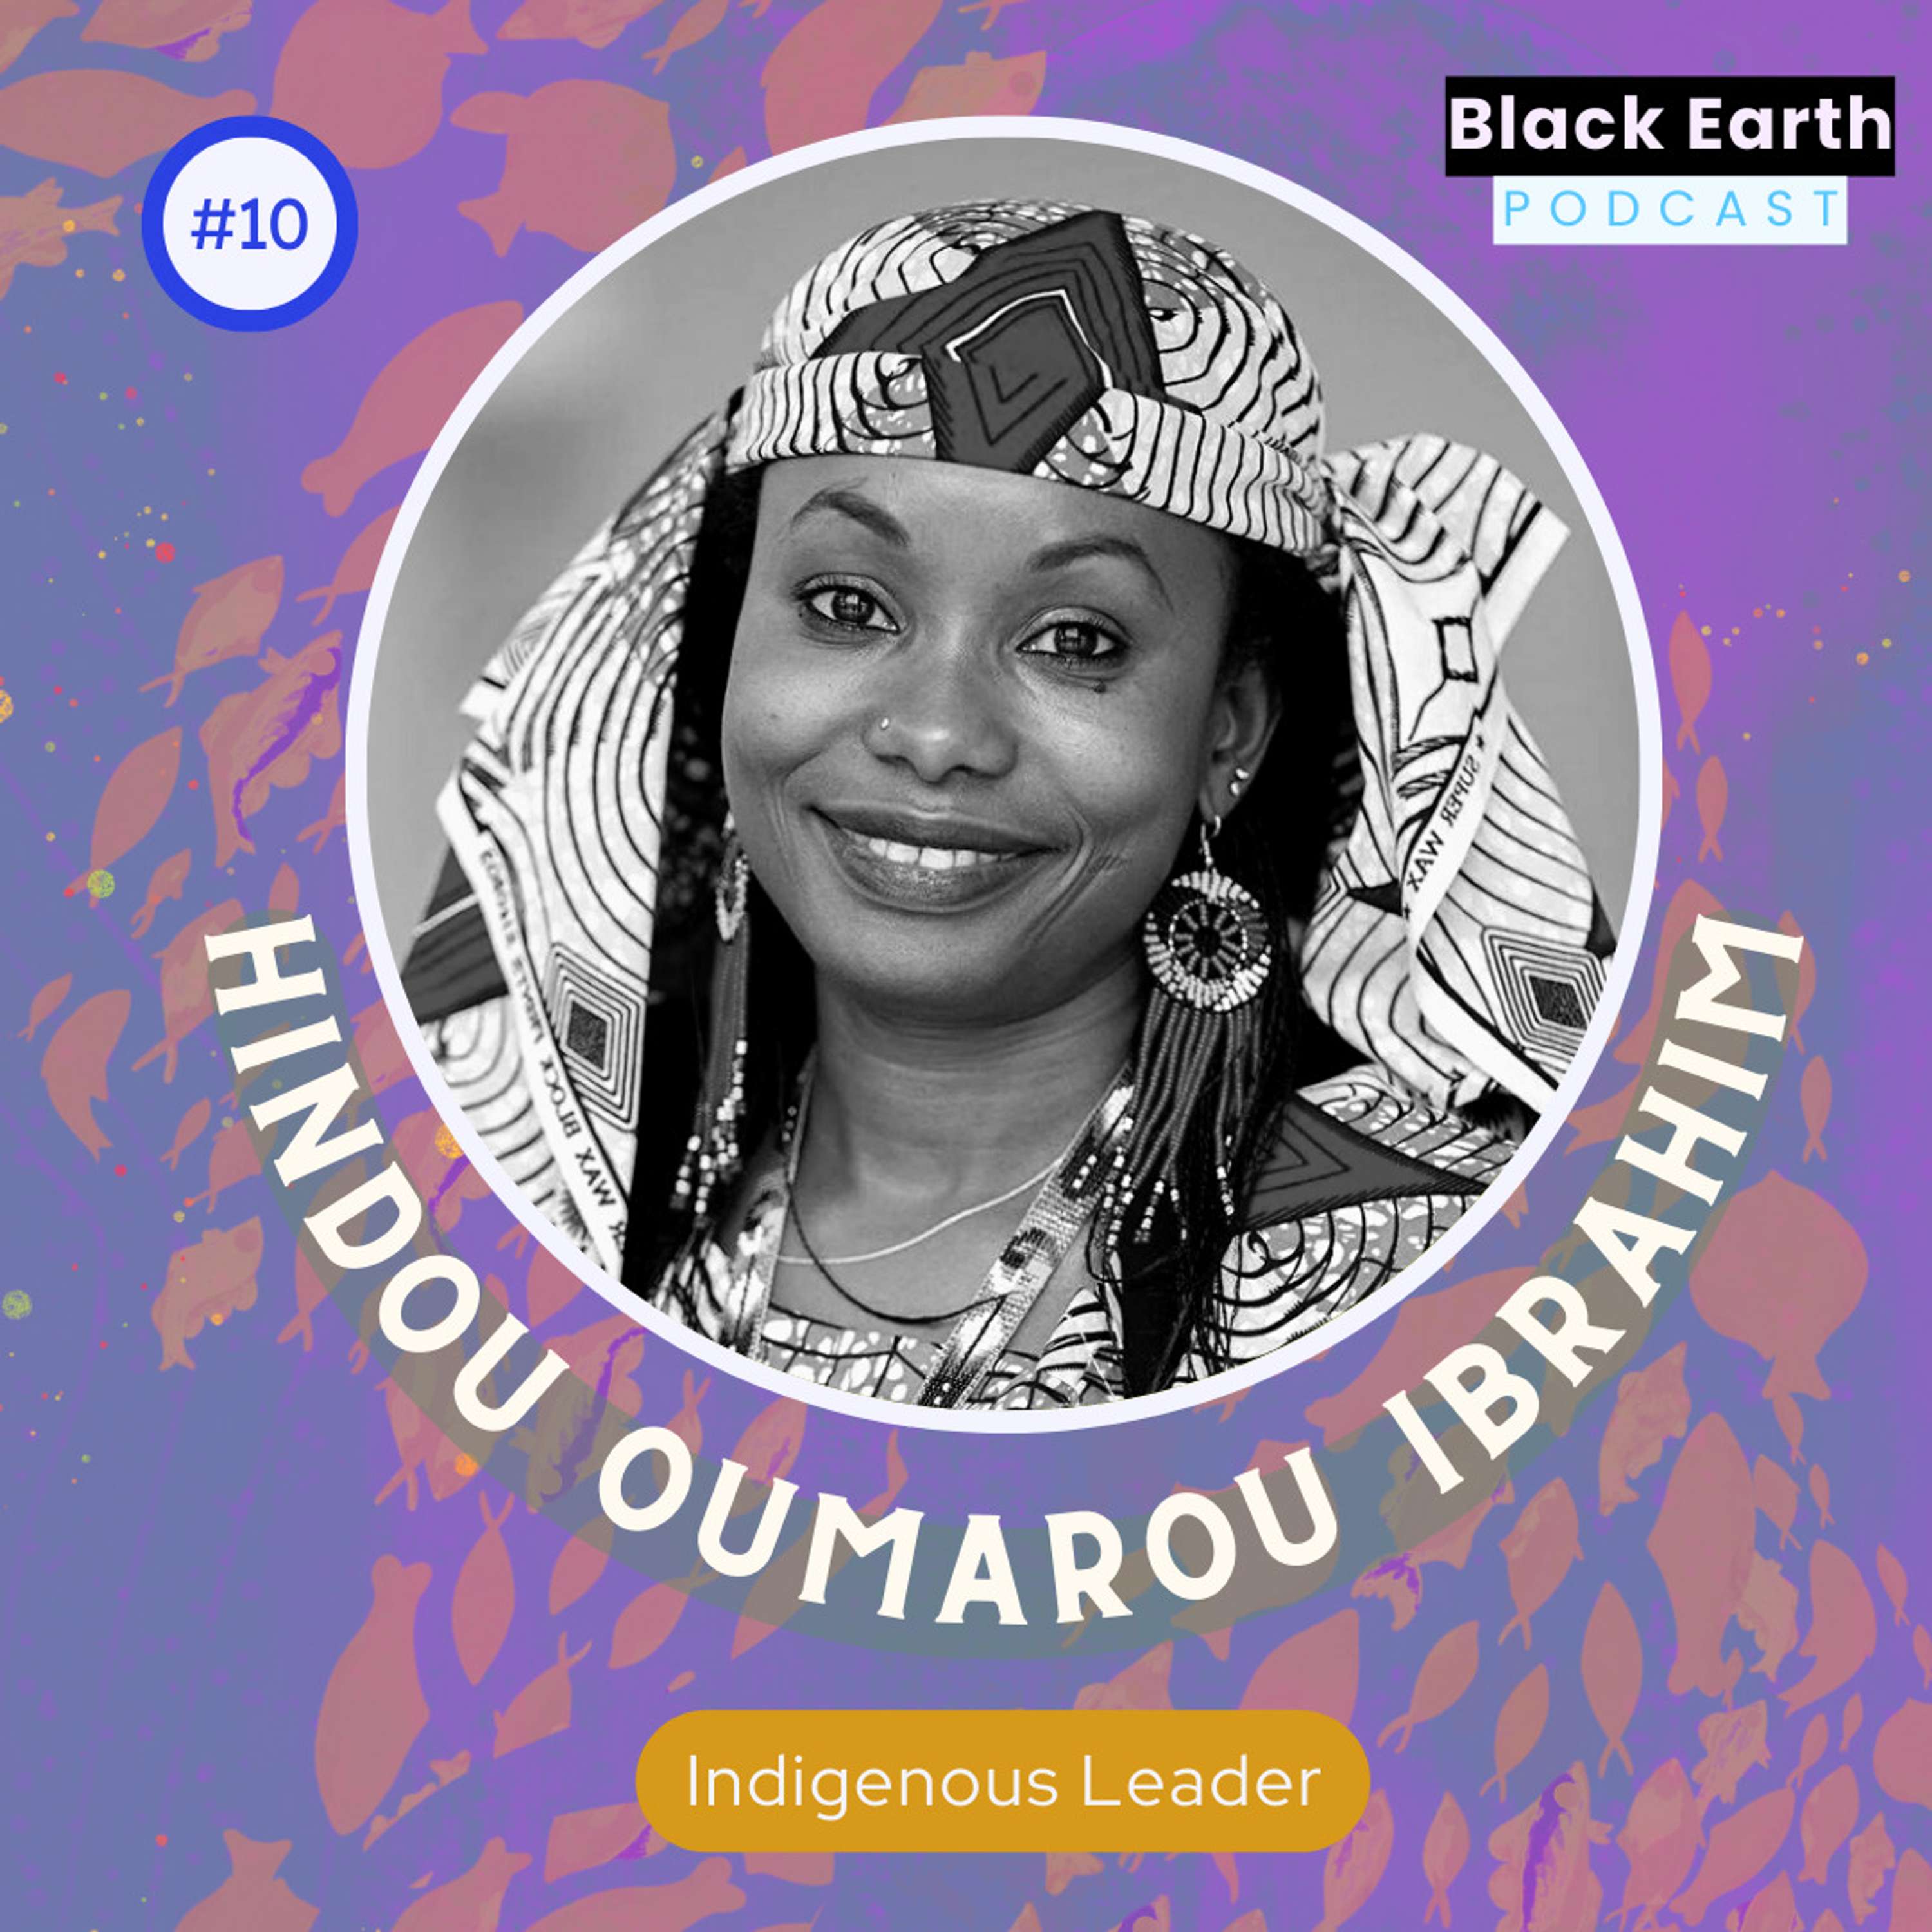 Celebrating Indigenous women’s leadership with Hindou Oumarou Ibrahim